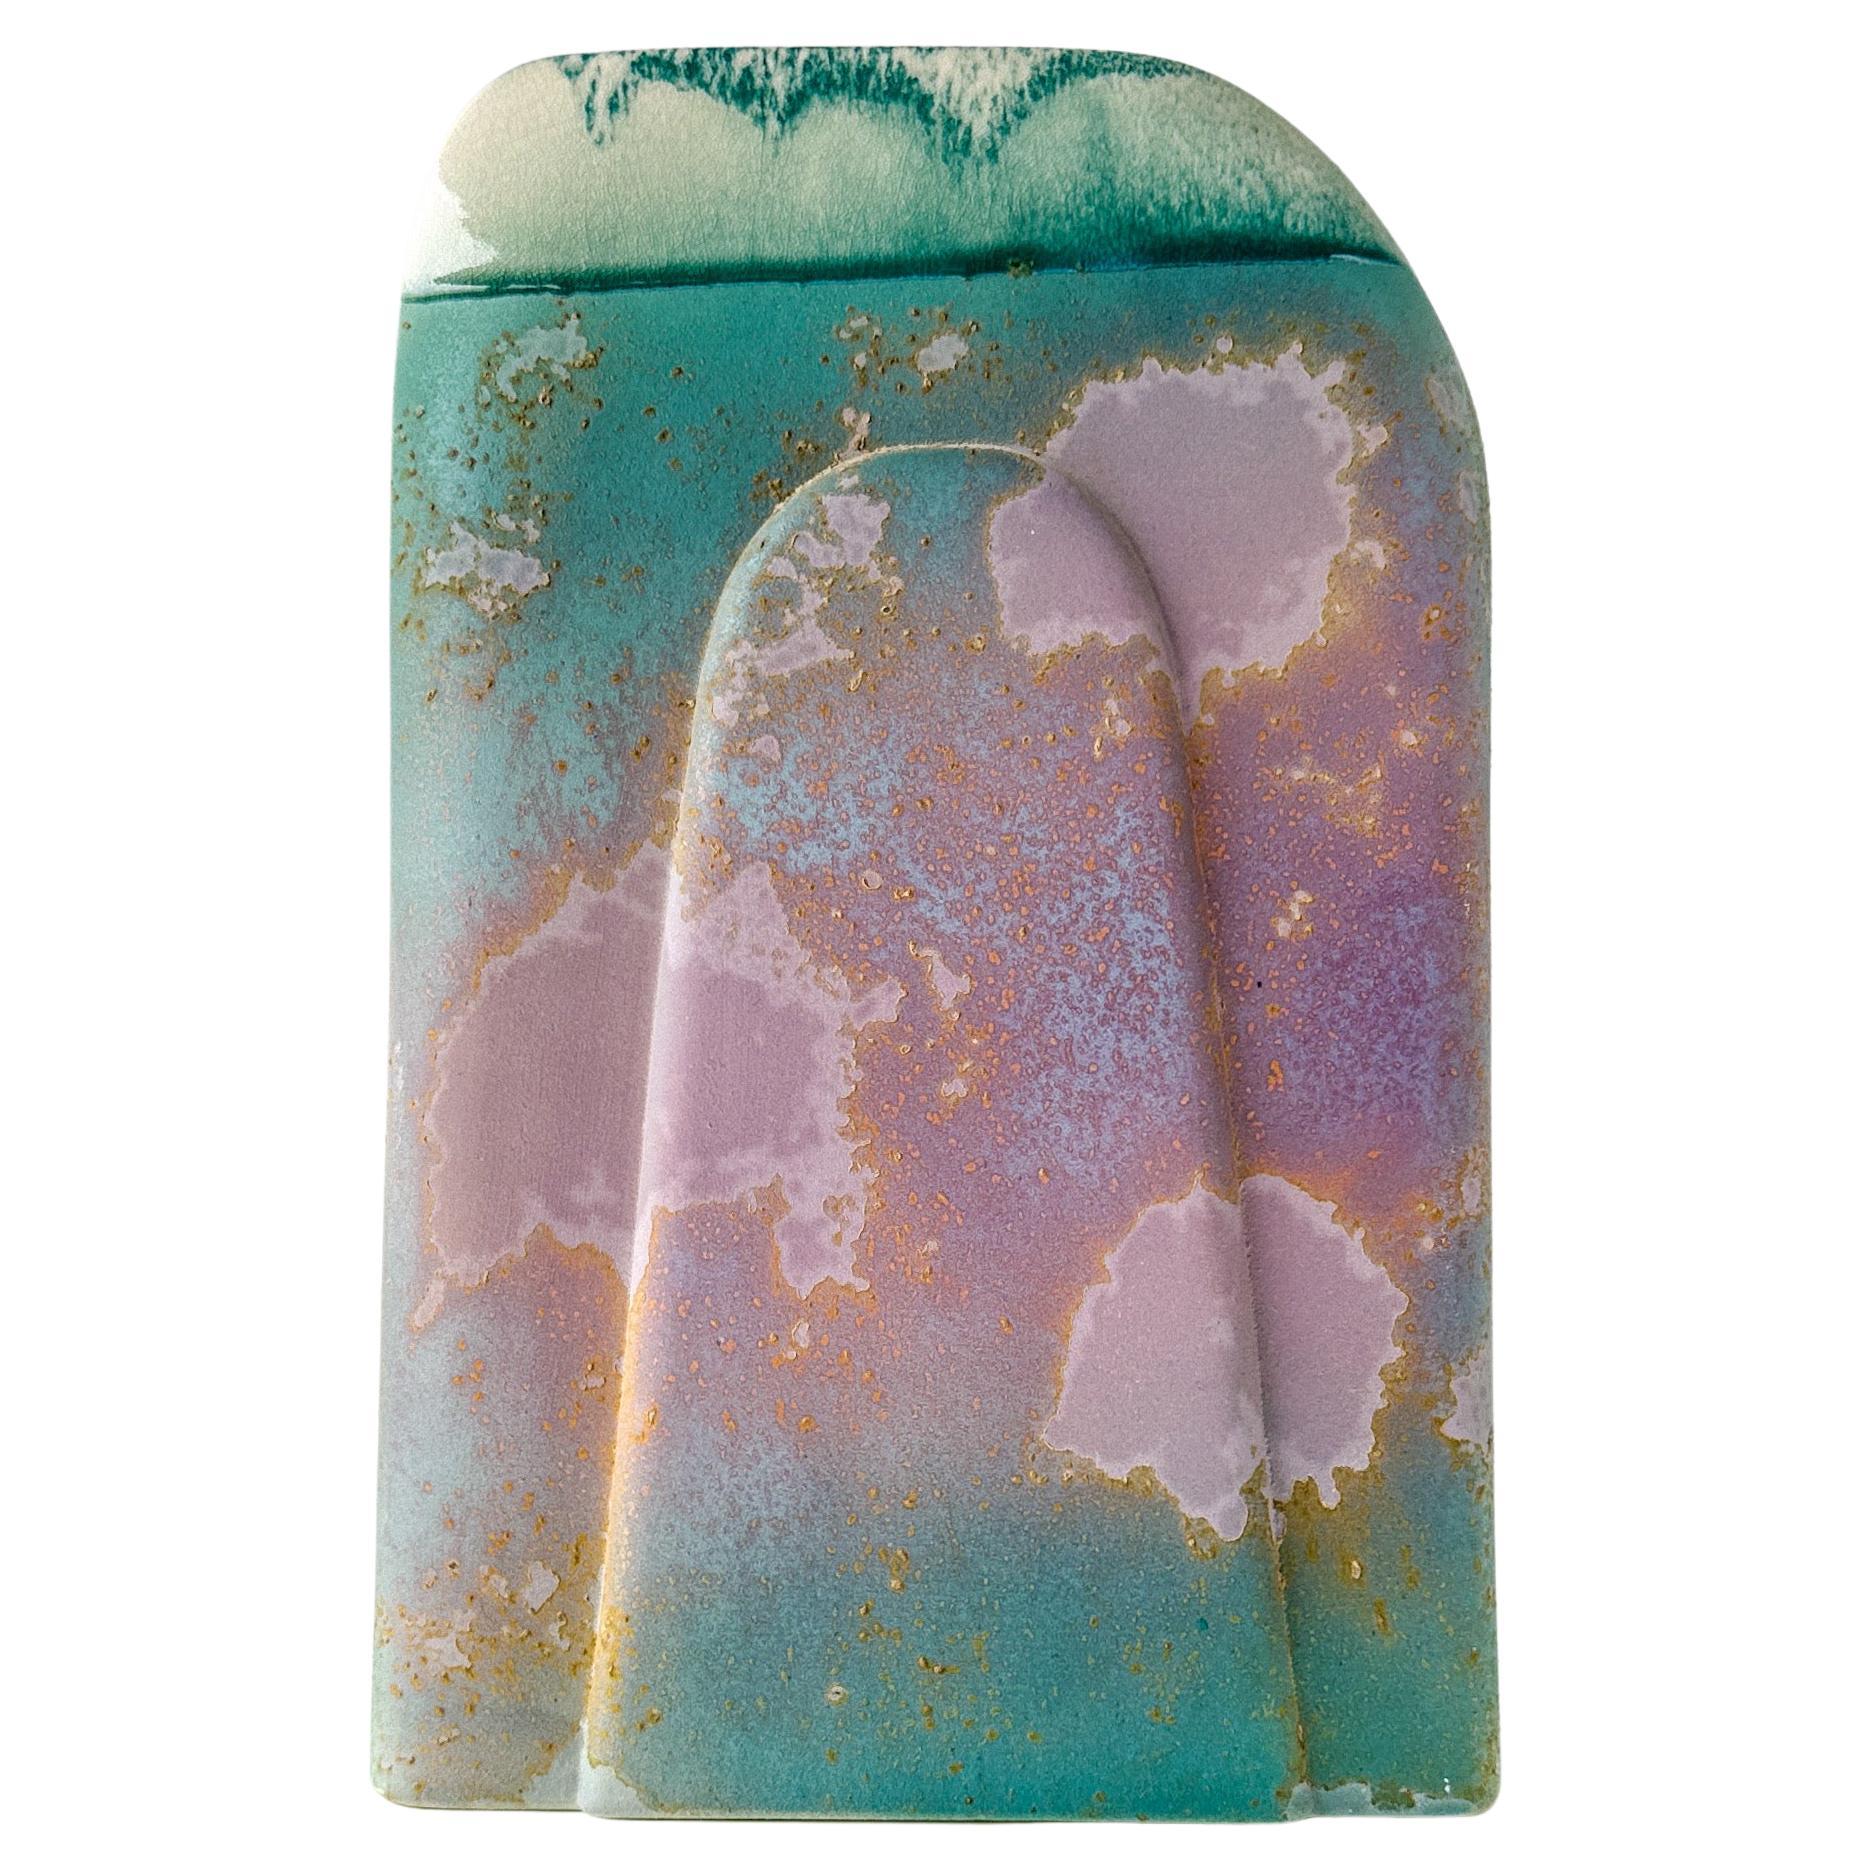 Vase en céramique raku de la fin du XXe siècle (1977-1989) par Tony Evans. La poterie Raku est sortie du four alors qu'elle est encore chaude et incandescente, puis recouverte d'un matériau qui prive l'émail d'oxygène et produit des couleurs et des